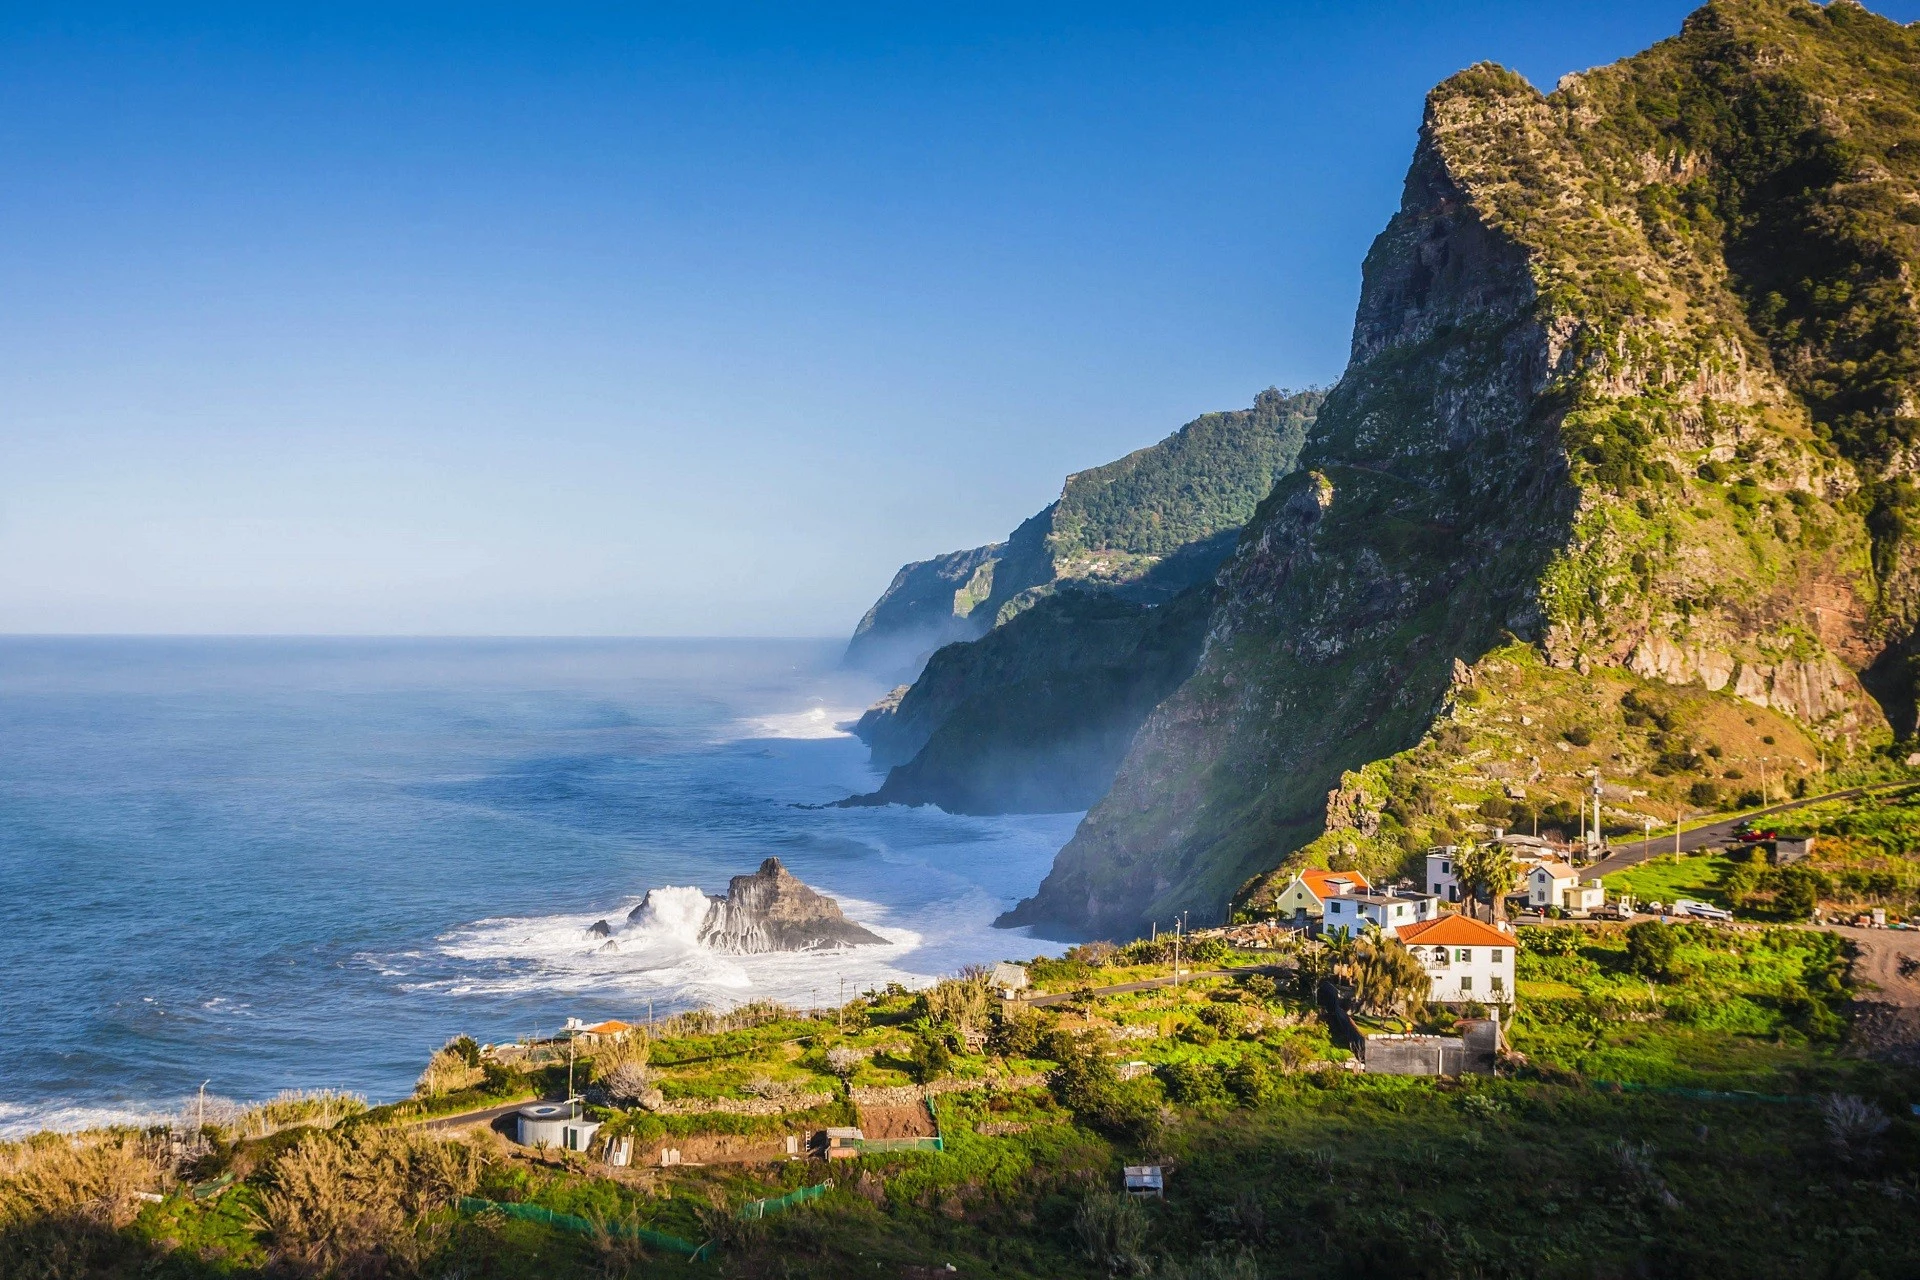 10. Funchal (Bồ Đào Nha): Thủ phủ hòn đảo Madeira ở Bồ Đào Nha là thành phố hội tụ các bãi biển, tòa nhà lịch sử và thiên nhiên hoang dã. Du khách có thể tham gia lướt sóng, đi thuyền, ngắm cá voi, cá heo hay khám phá những tòa nhà lâu đời. Không chỉ có mạng lưới giao thông thuận tiện, gần sân bay, khí hậu cận nhiệt đới ôn hòa, Funchal còn xếp thứ 10 trong danh sách điểm đến có chi phí tốt nhất thế giới. Thành phố xứng đáng để bạn ghé thăm sau mùa dịch. Ảnh: Erasmusu.